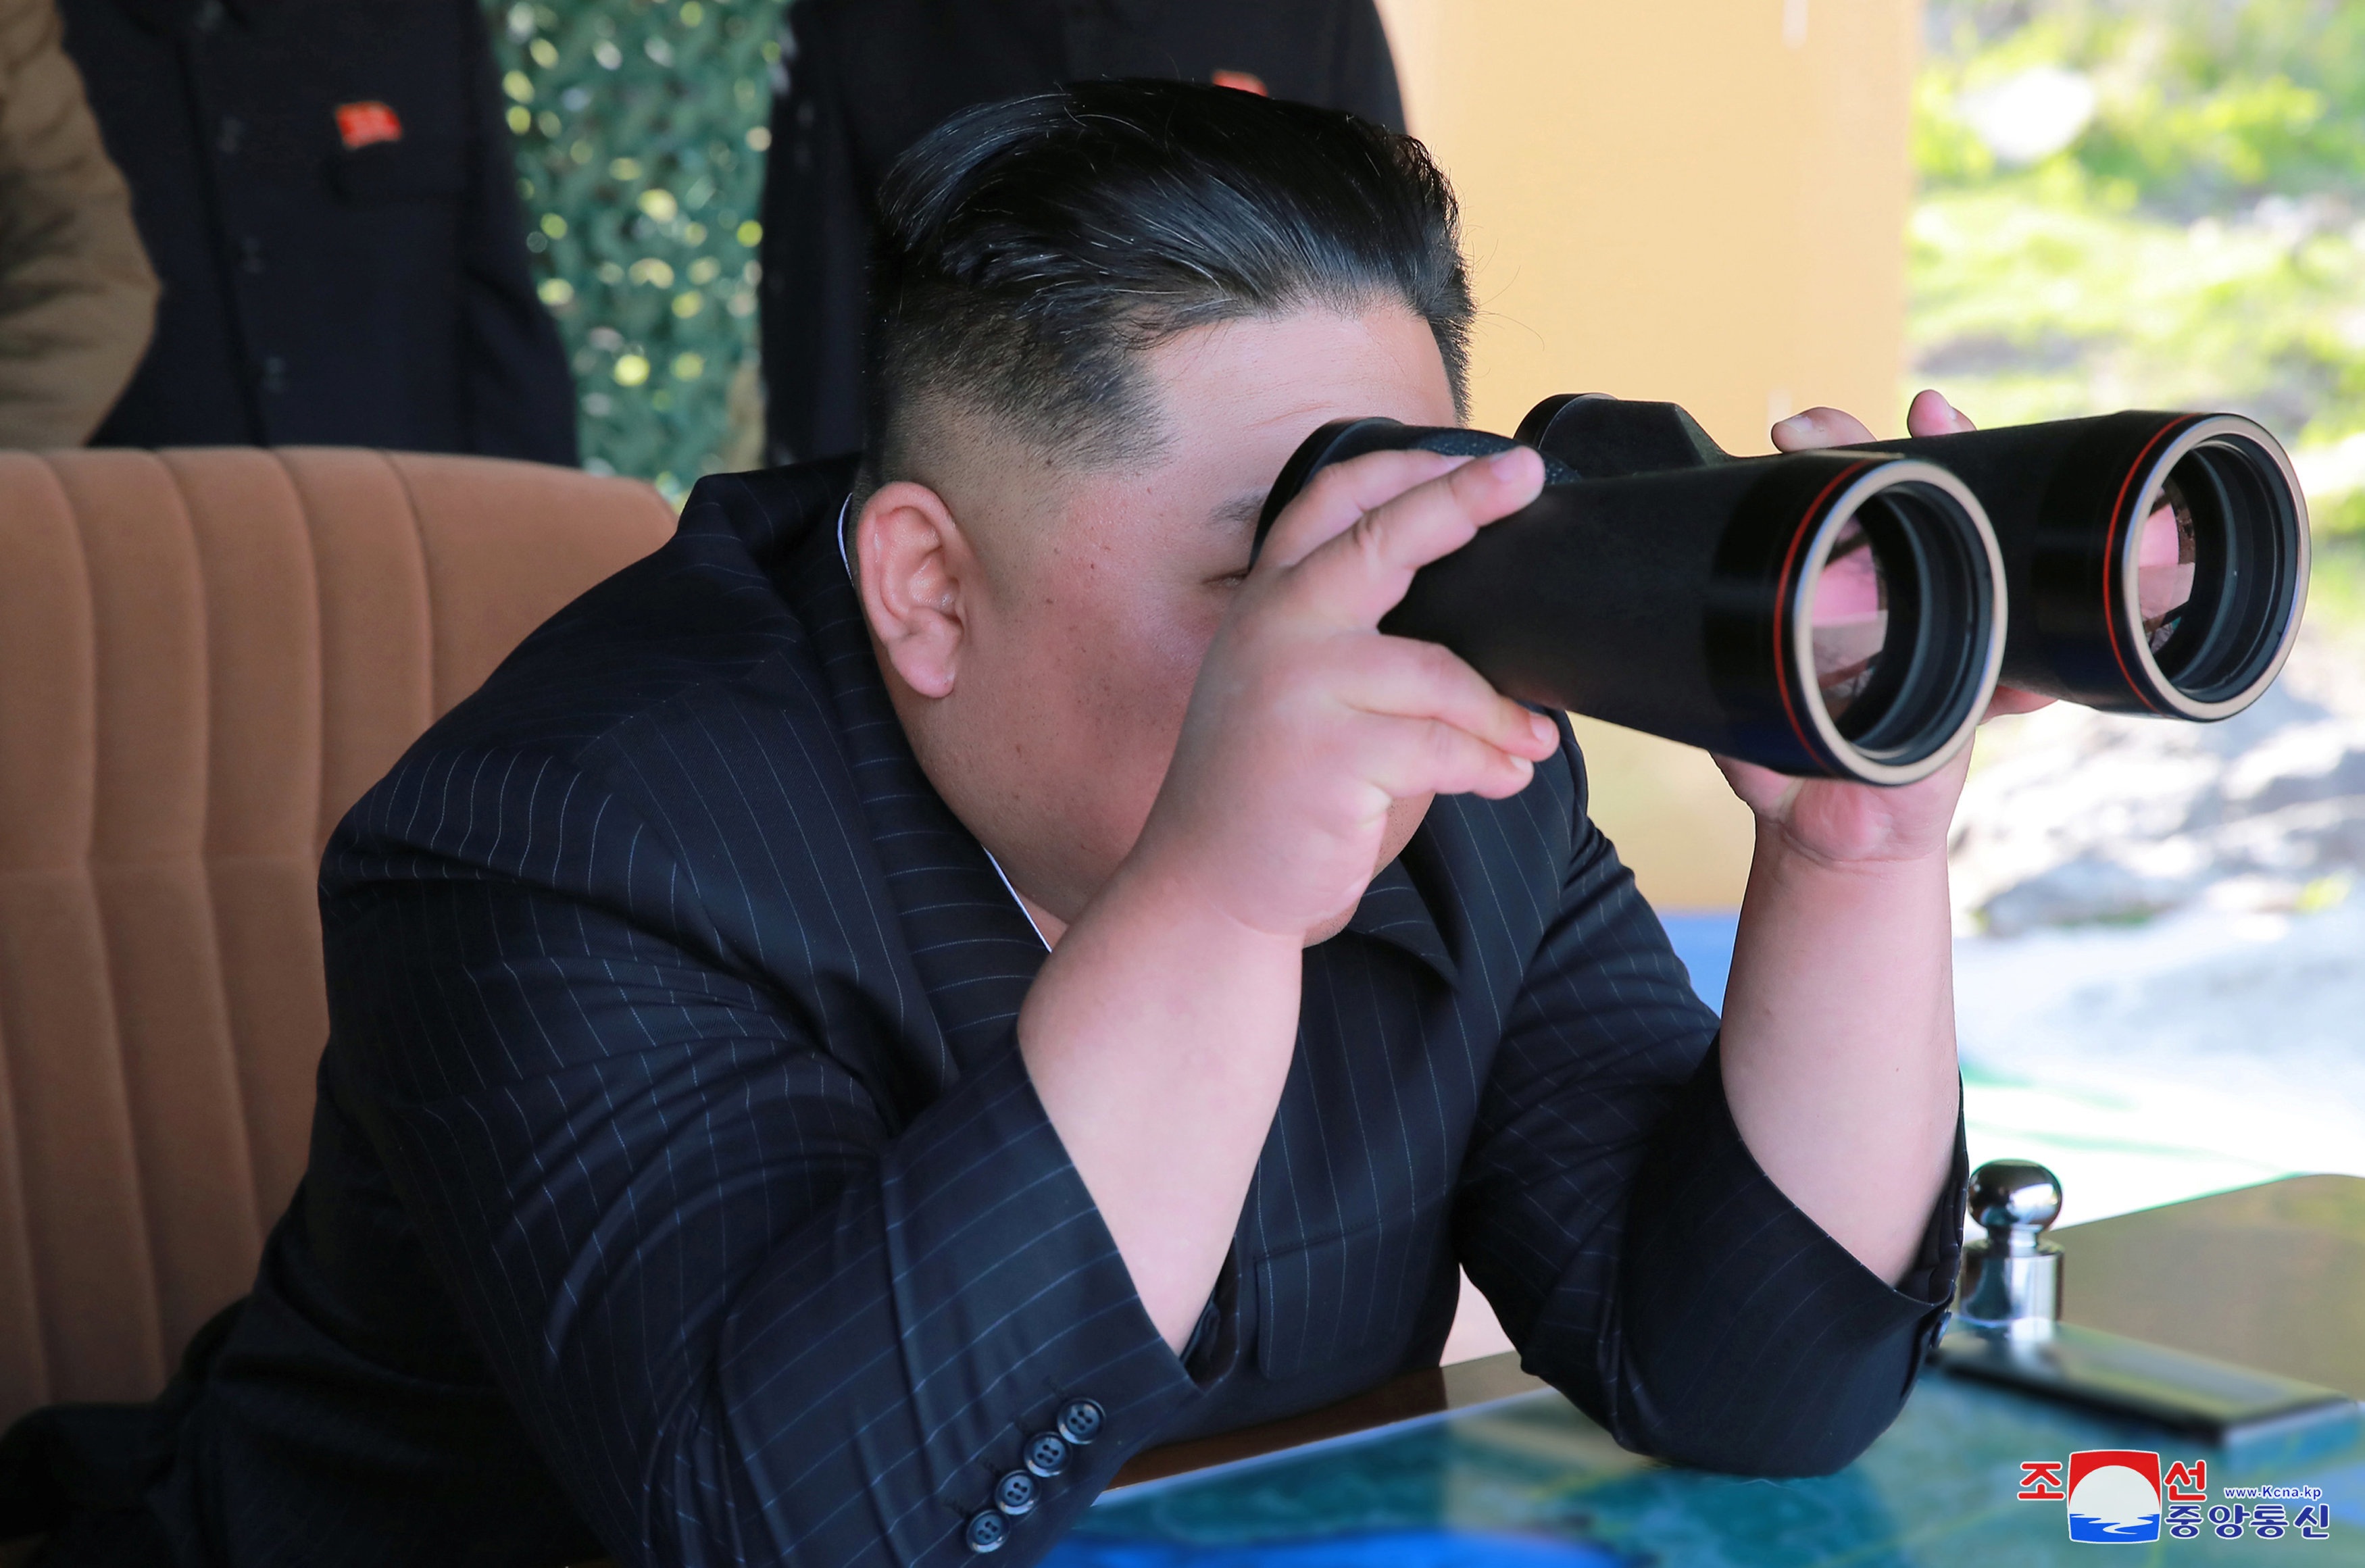 Triều Tiên: Mỹ không muốn cải thiện quan hệ, chỉ tìm cách lật đổ